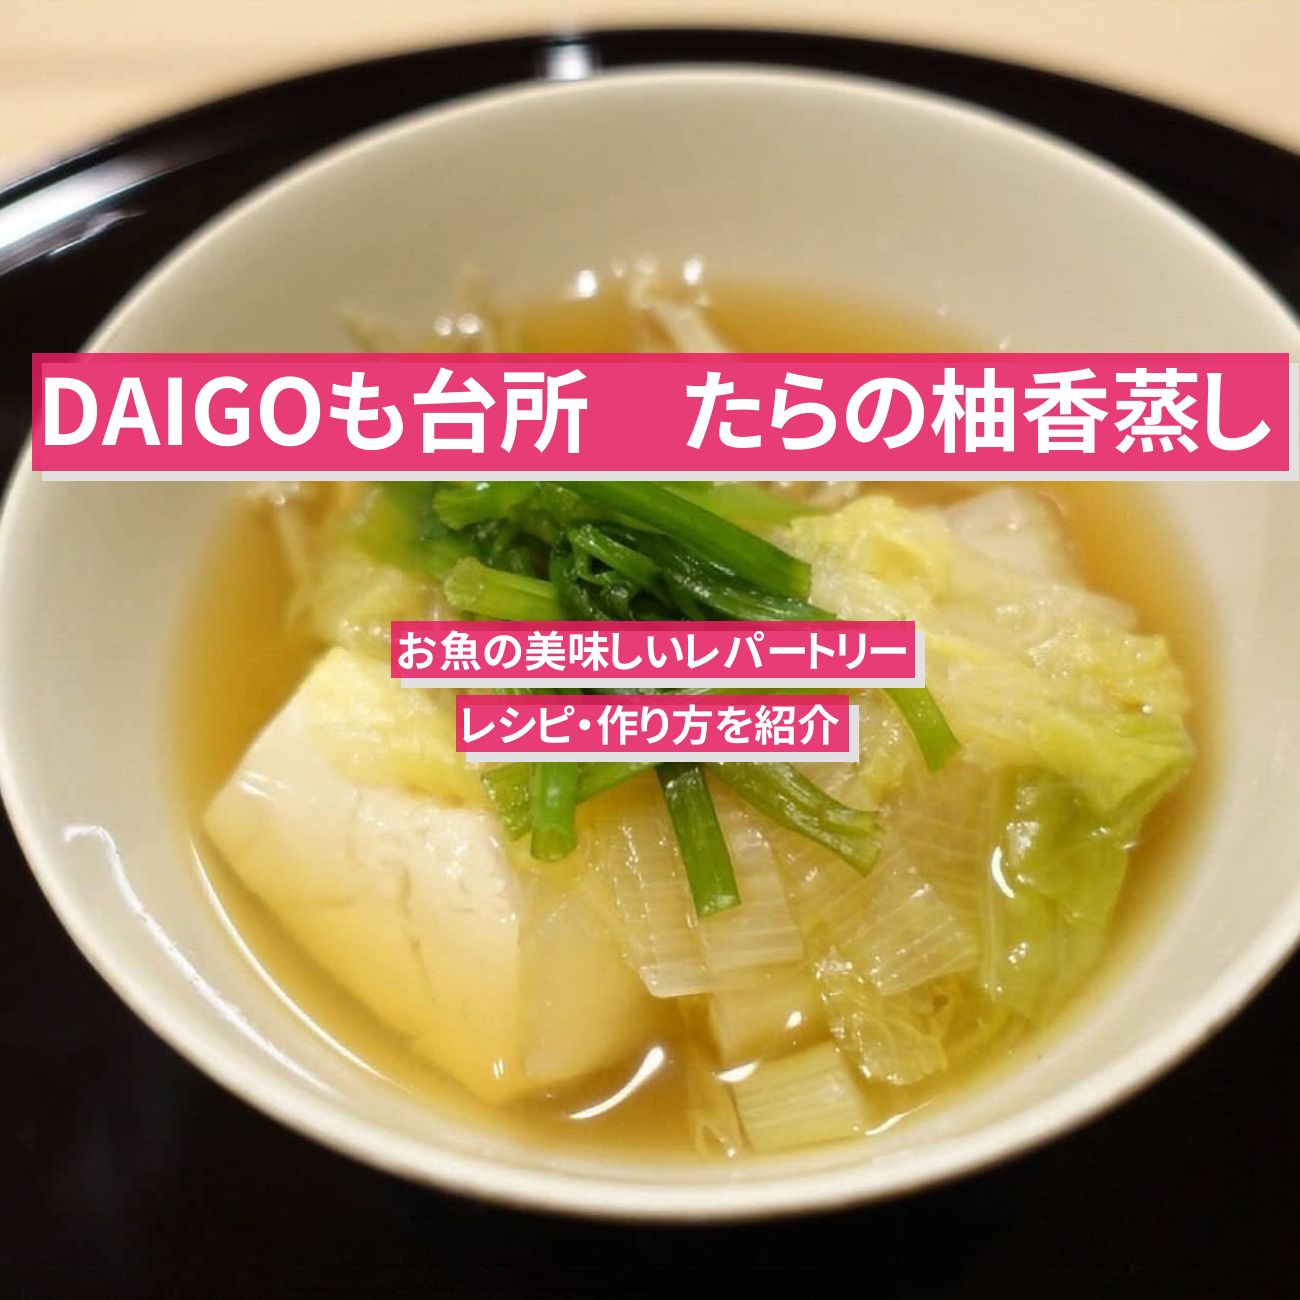 【DAIGOも台所】『たらの柚香蒸し（ゆこうむし）』のレシピ・作り方を紹介